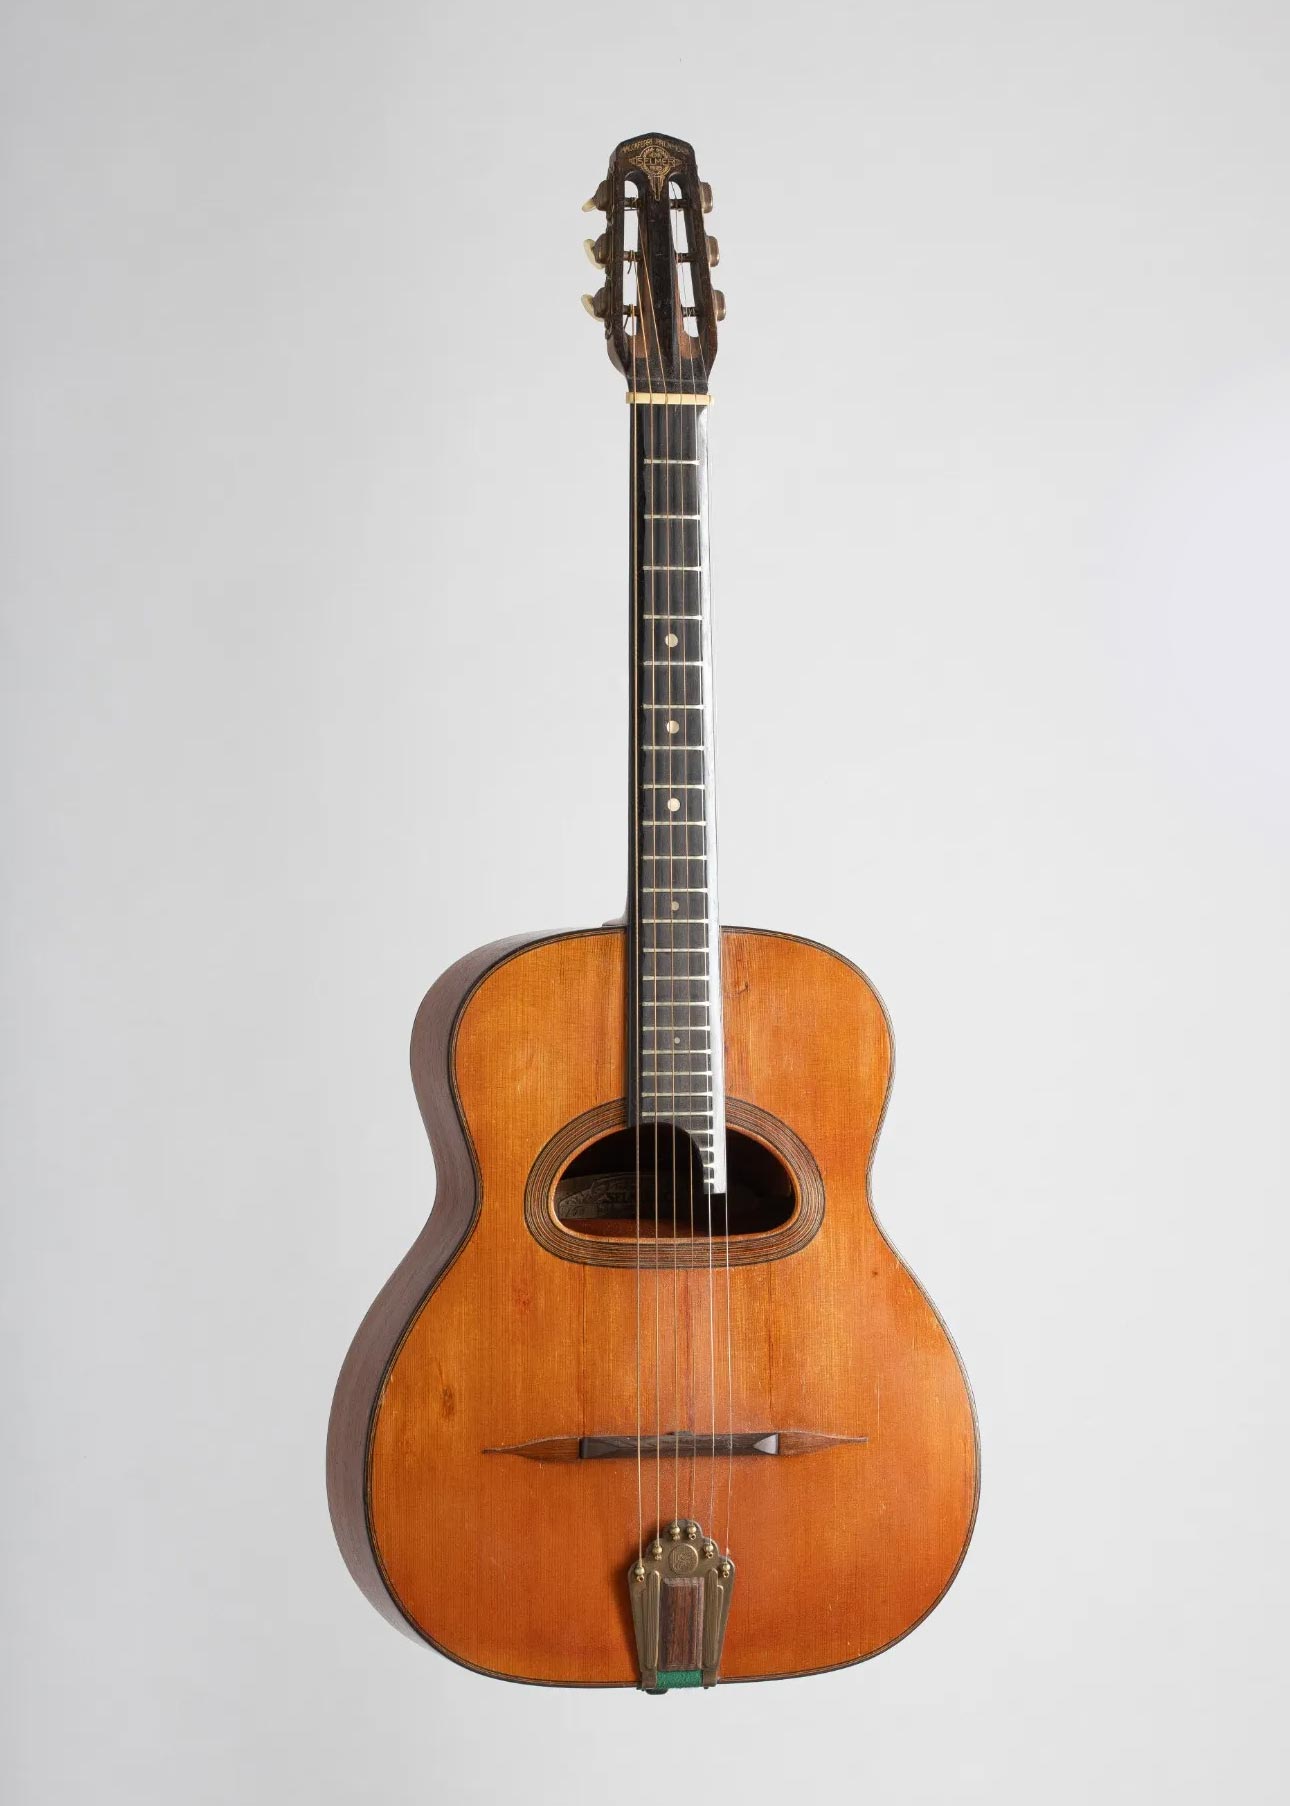 Guitare Hawaïenne SELMER Maccaferri, pat. n° 10431, modèle "Hawaïenne" six cordes faite vers 1932 Instrument mis en vente par Vichy Enchères le 5 novembre 2022 © C. Darbelet